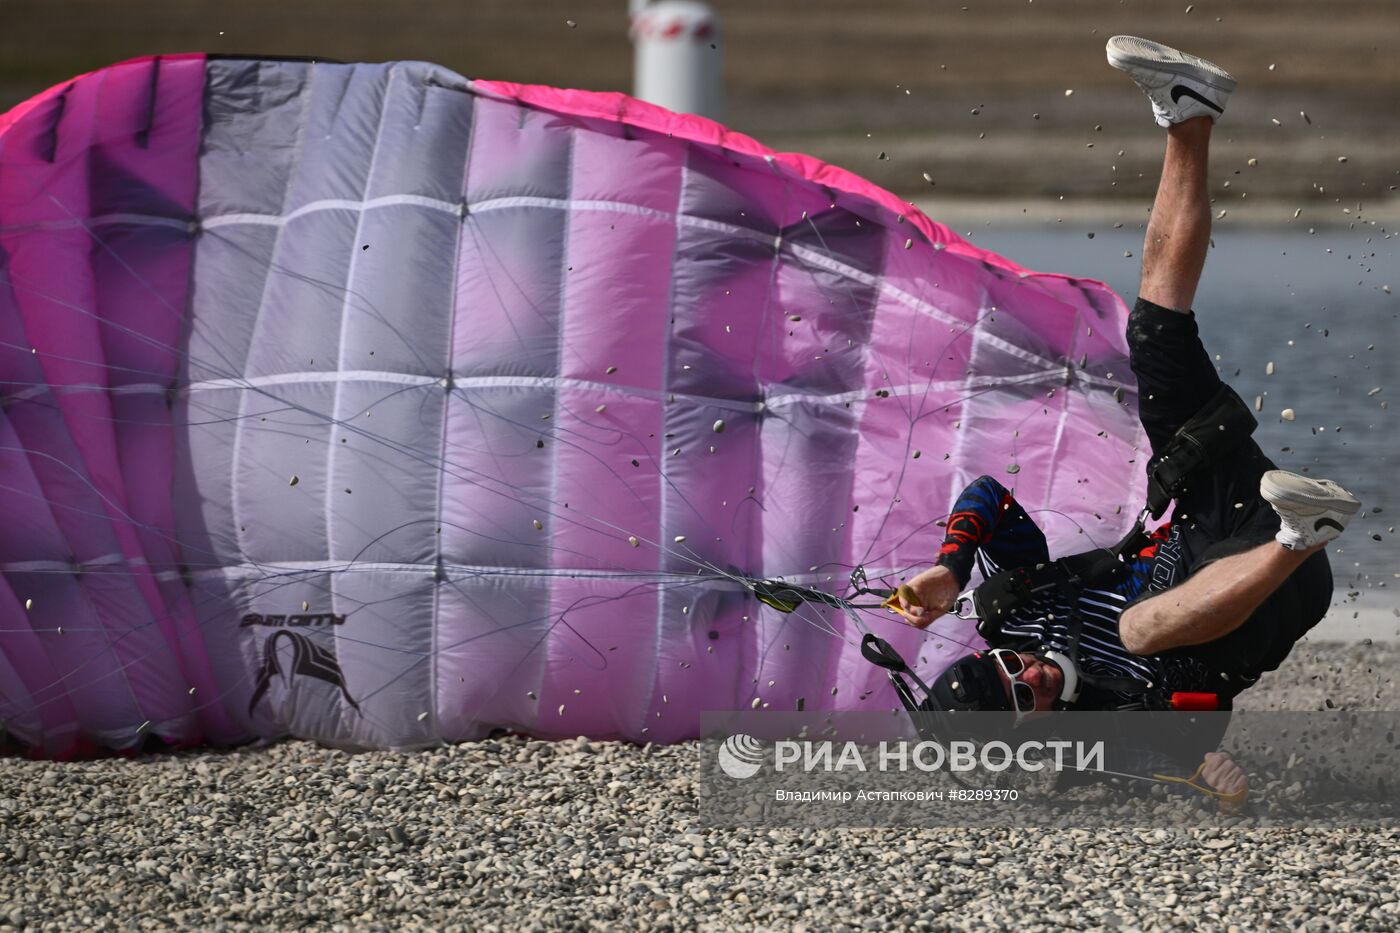 Соревнования по парашютному спорту в Гудермесе